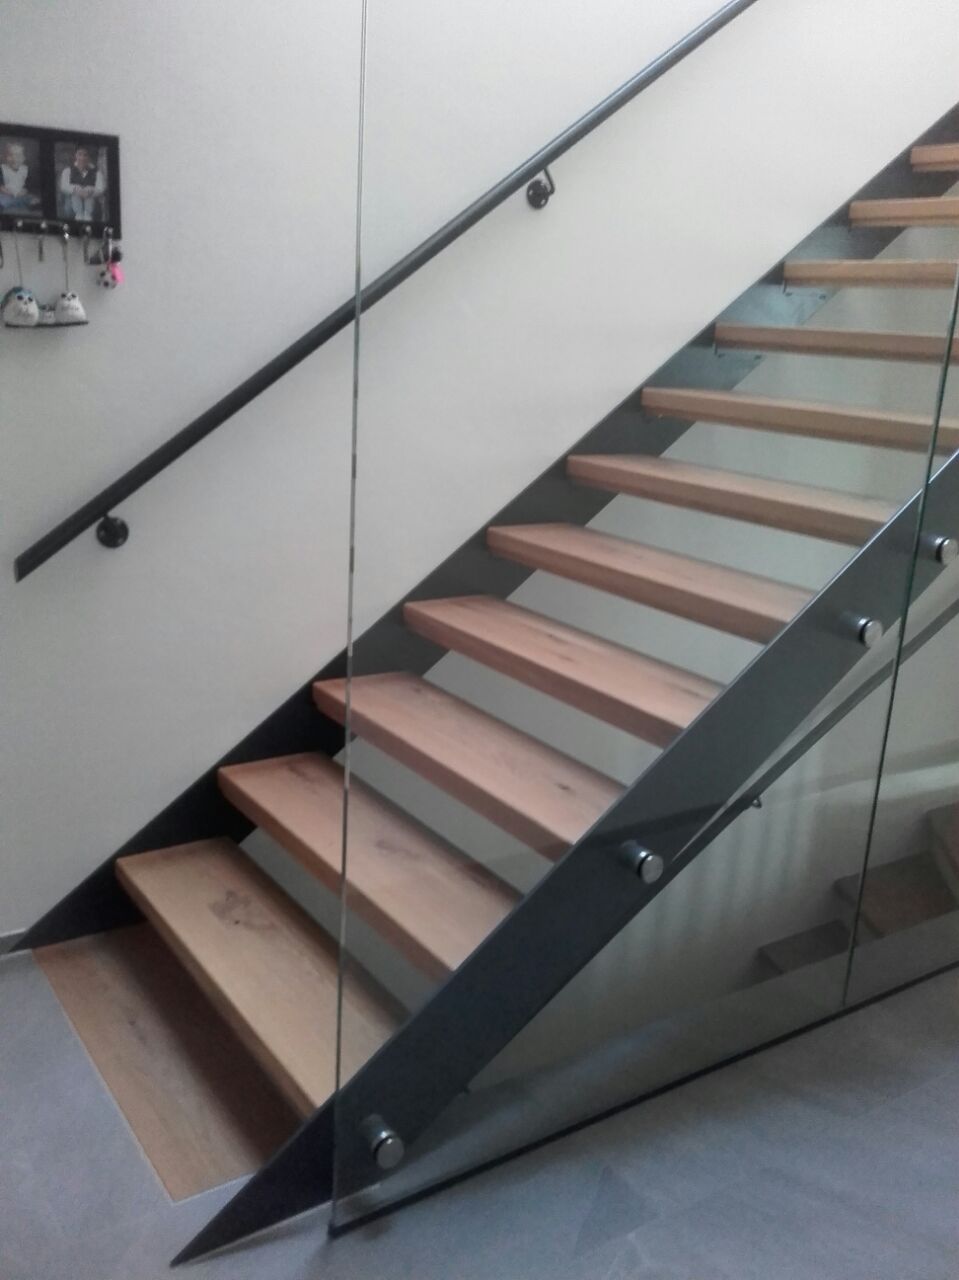 Treppe mit Wangen aus Metall, die Stufen sind aus Holz gefertigt. Rechts als Absturzsicherung deckenhohe Glasscheiben